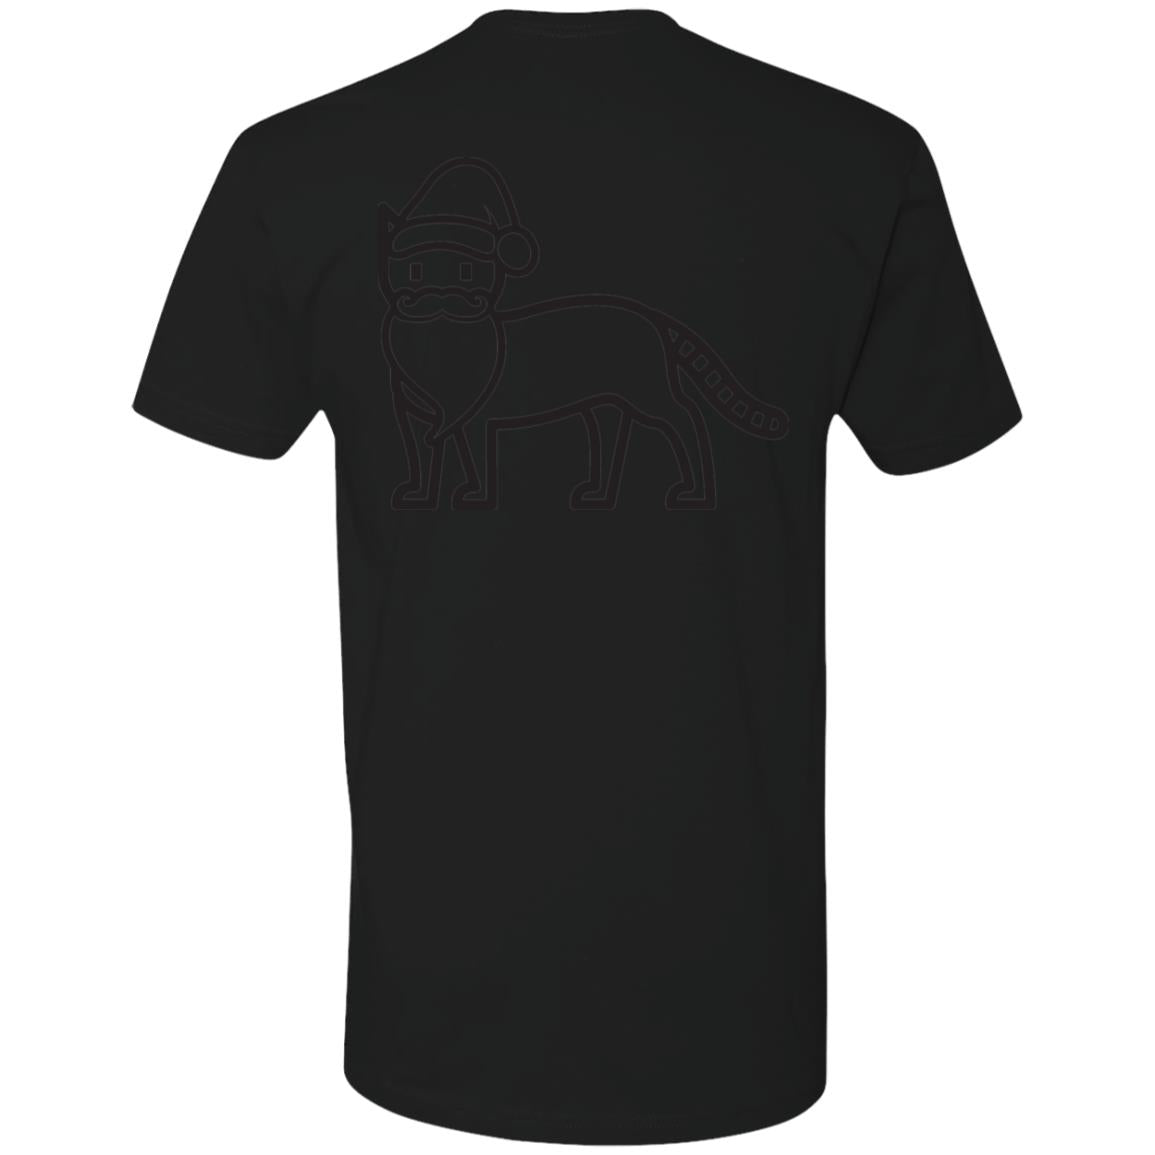 Z61 Premium Short Sleeve T-Shirt